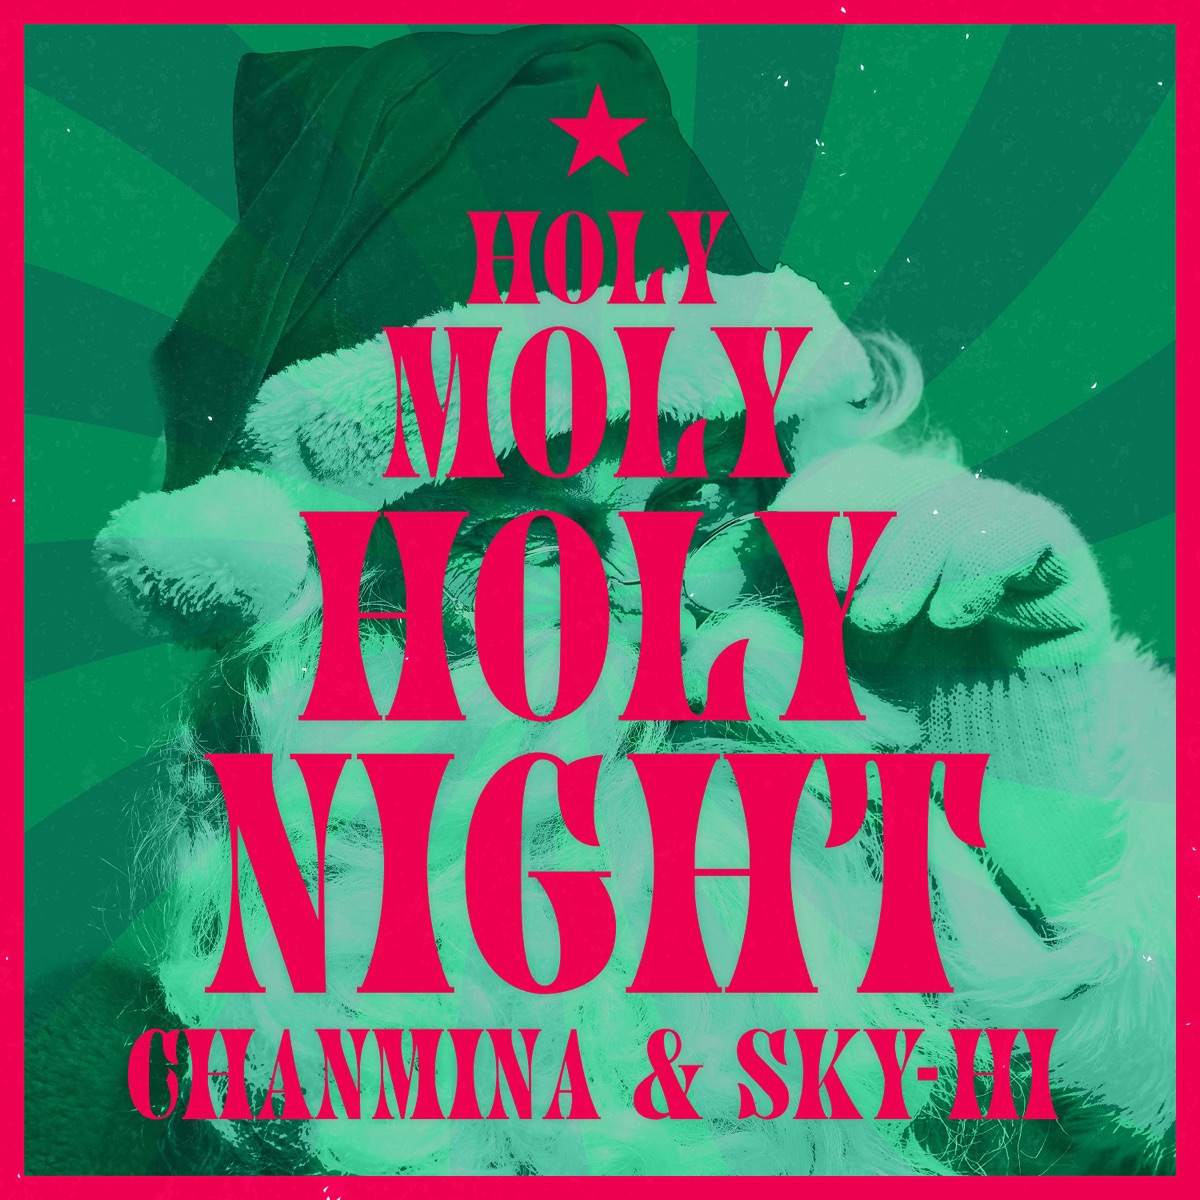 『ちゃんみな & SKY-HI - Holy Moly Holy Night』収録の『Holy Moly Holy Night』ジャケット